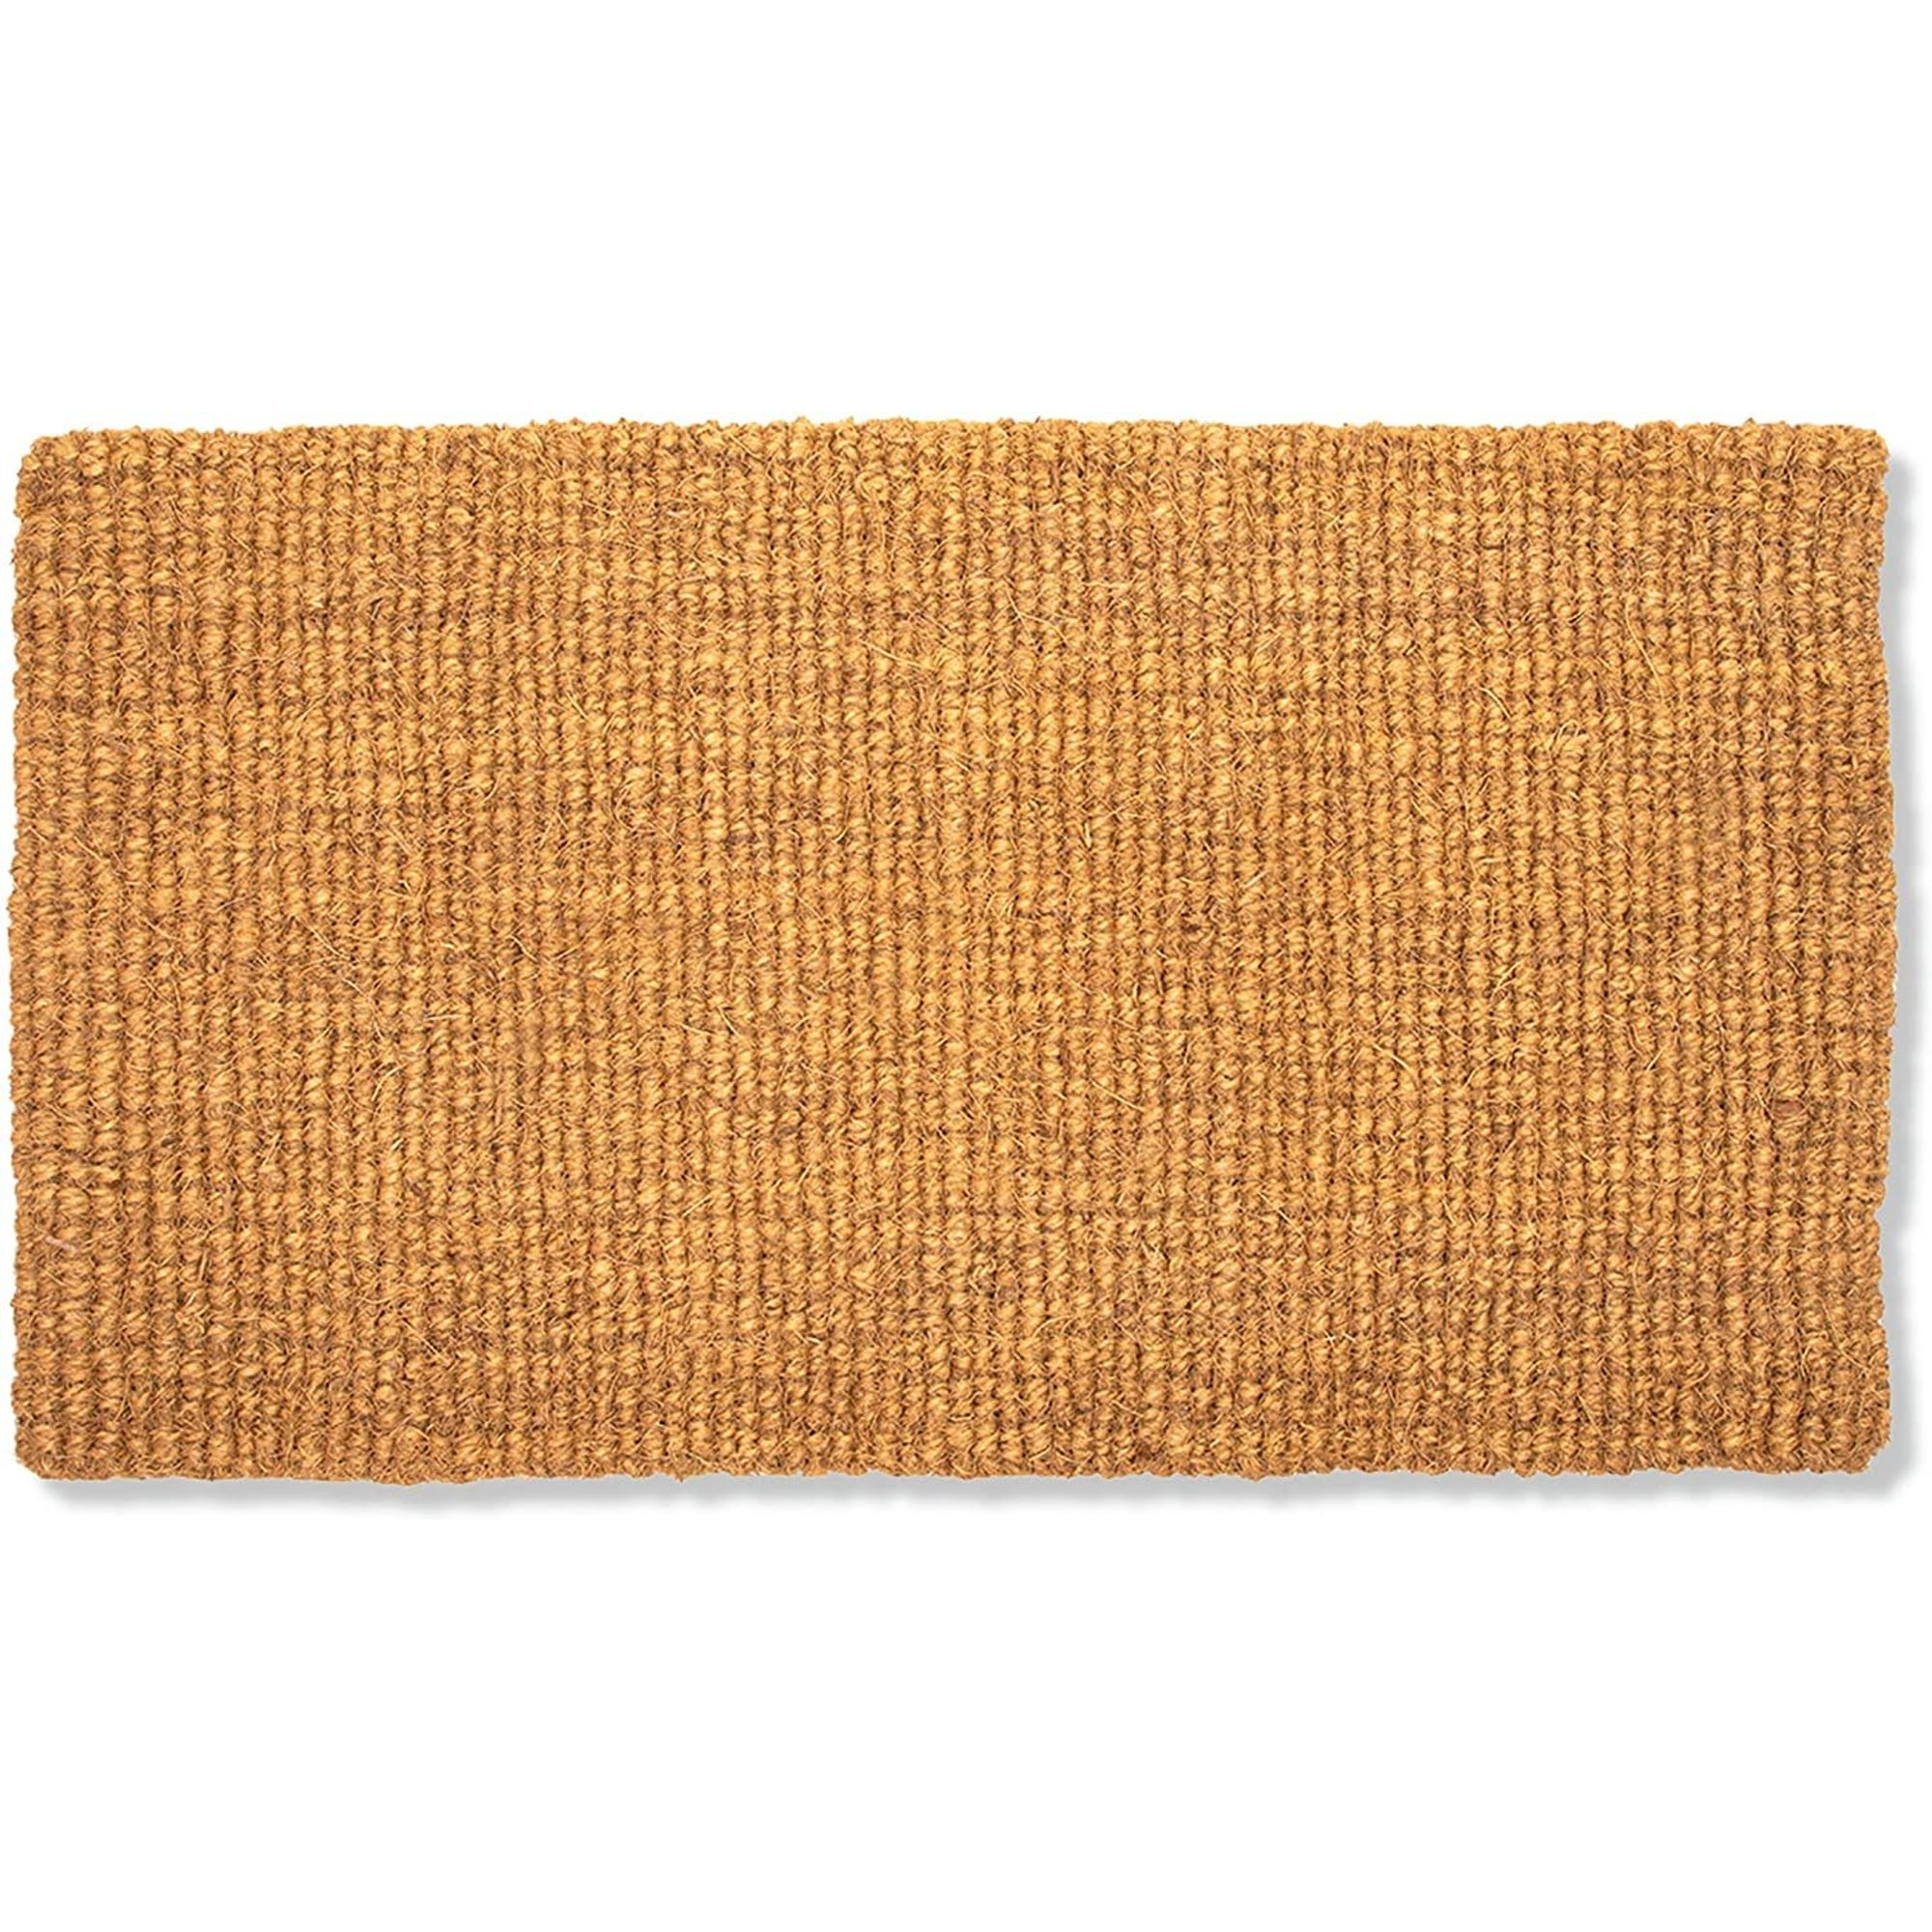 Embossed Door Mat Natural Coco Coir Non-slip Doormat for Home